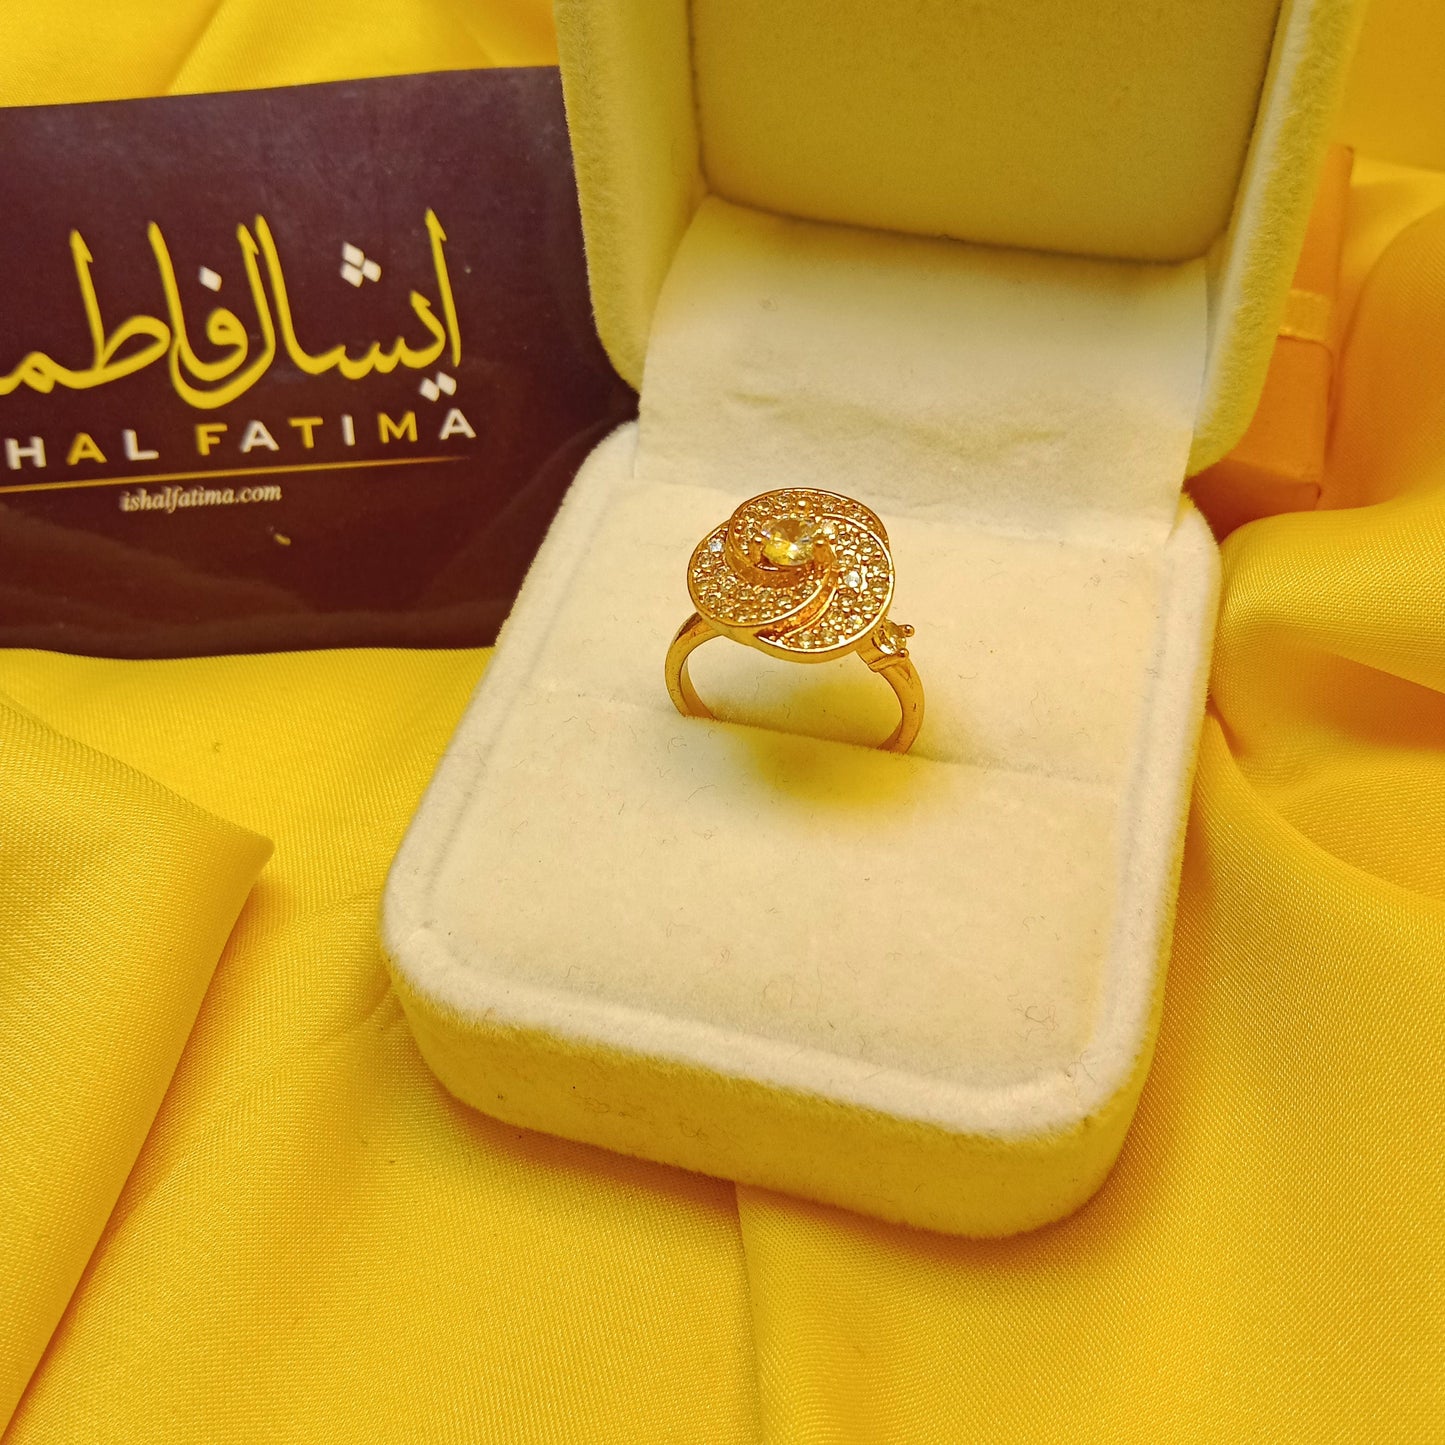 Ishal Fatima Design 2 golden Adjustable Moving Ring